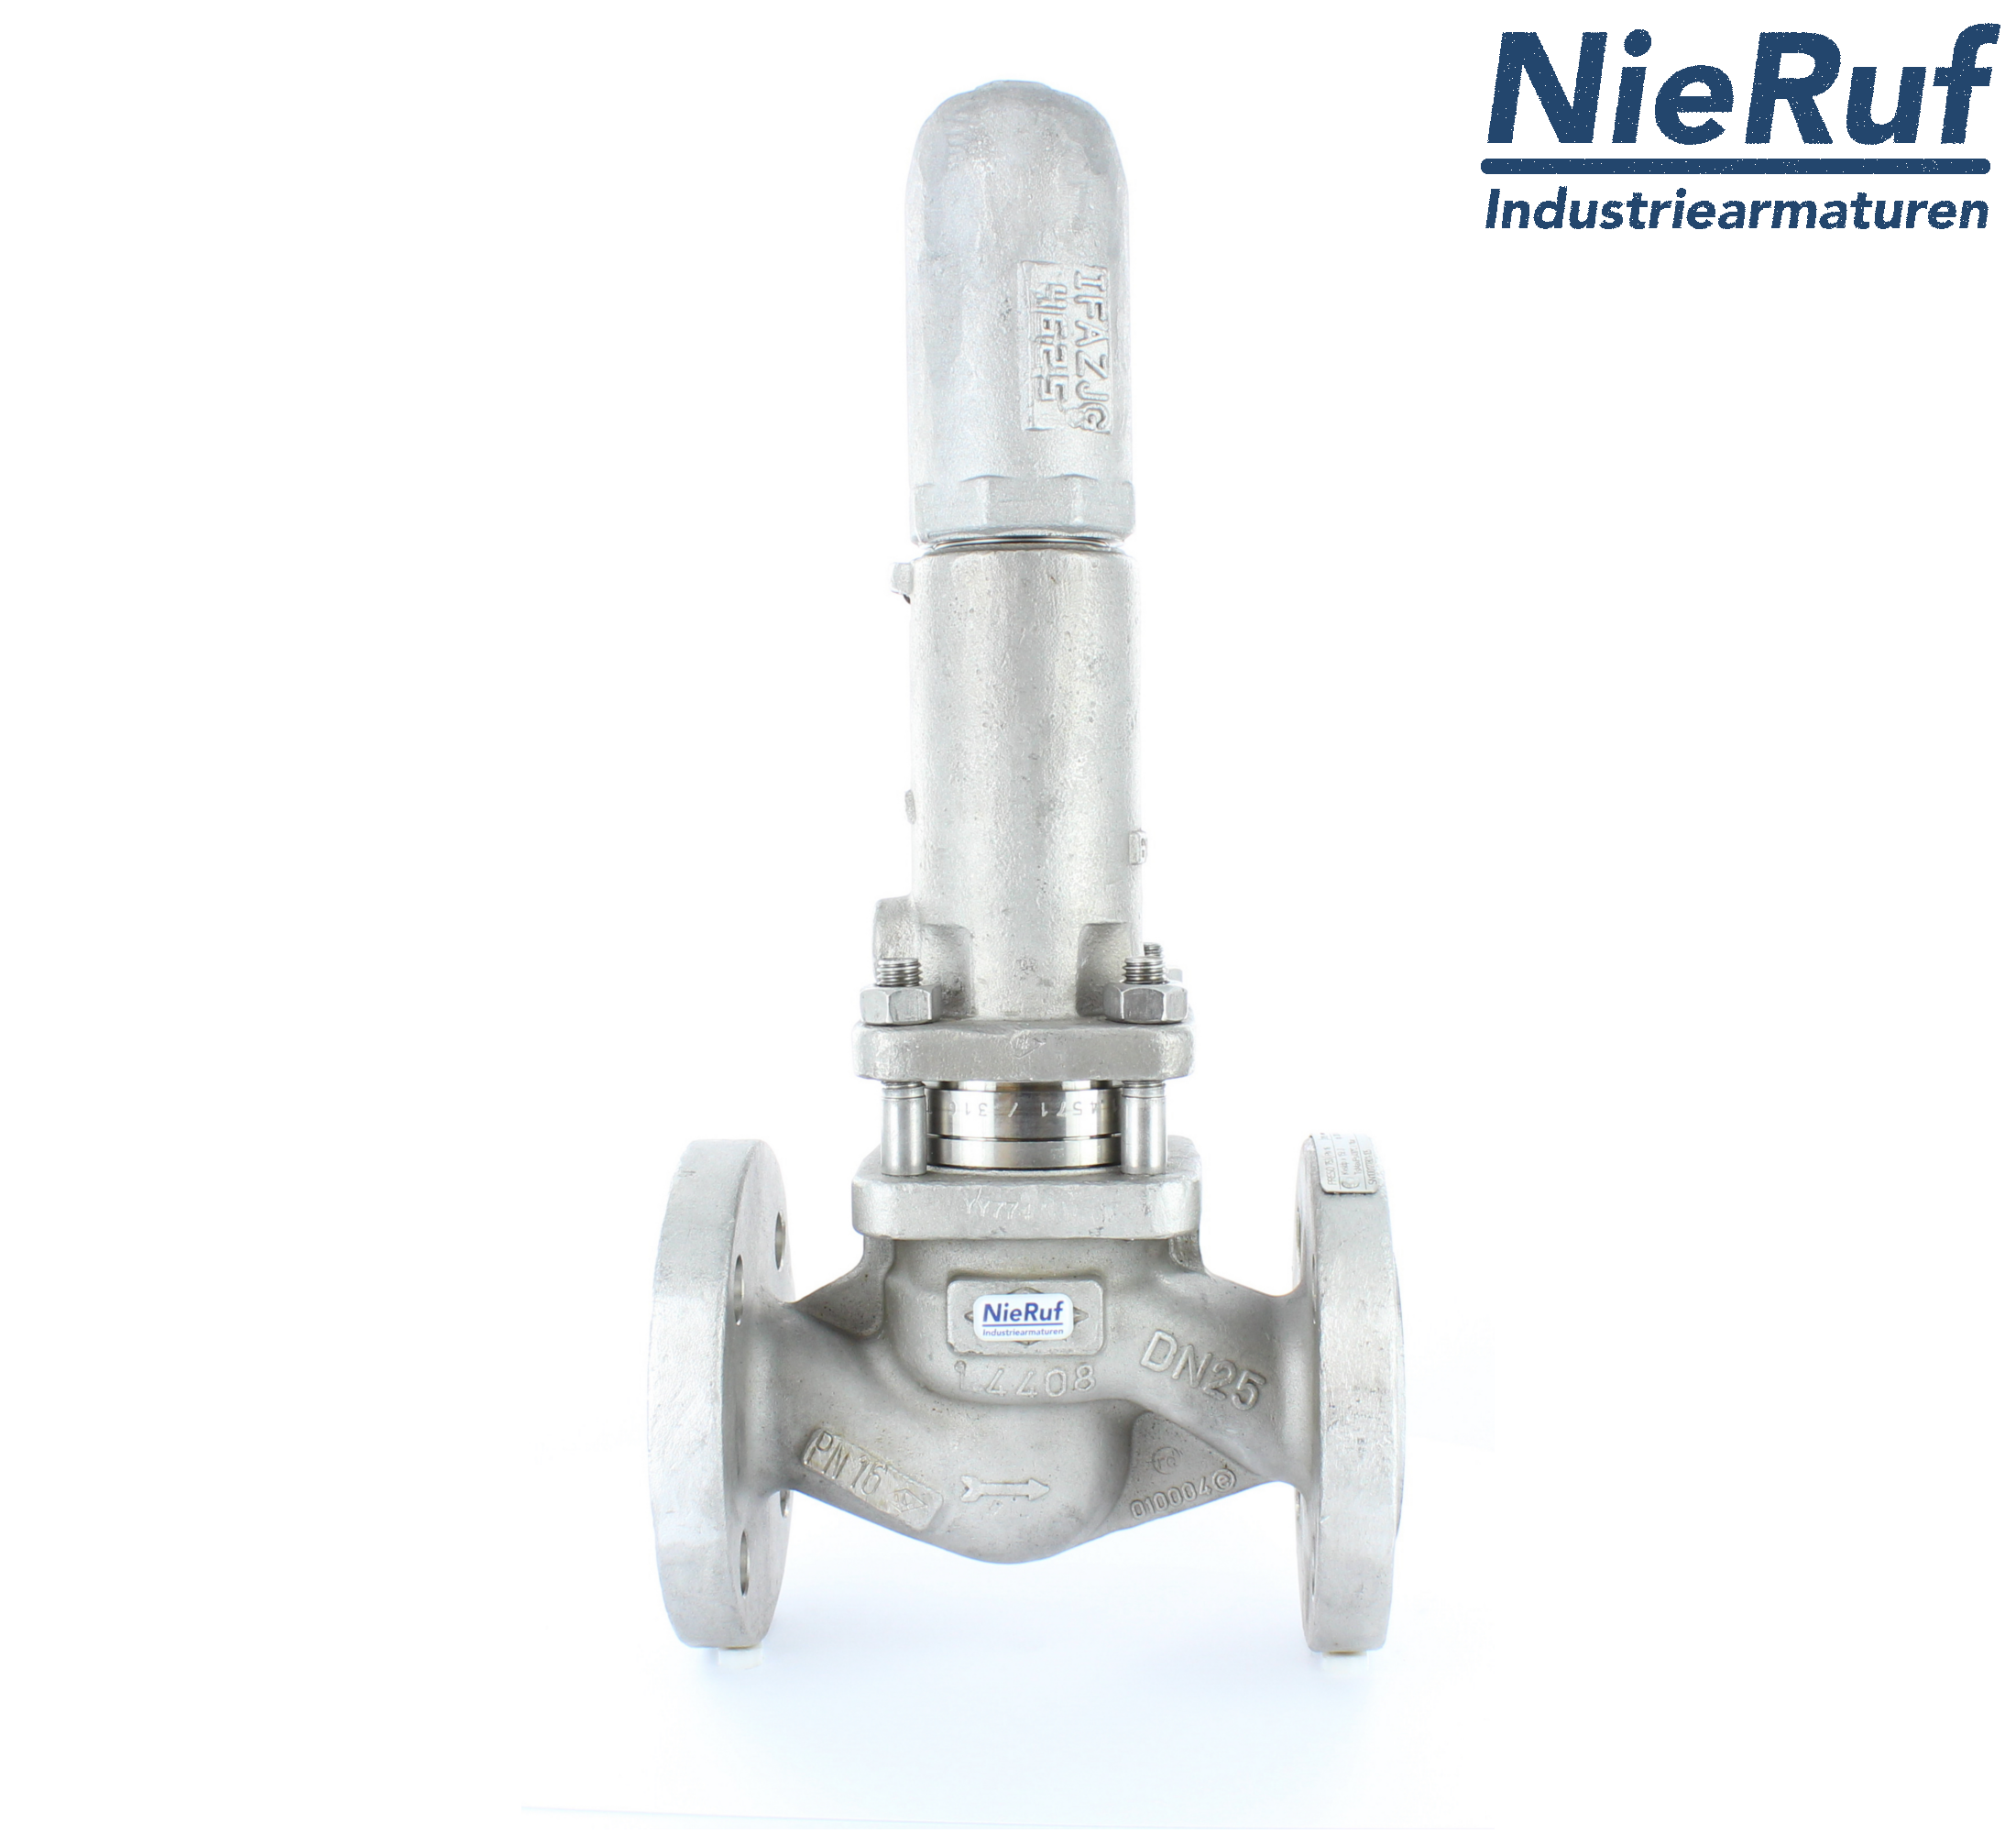 piston overflow valve DN 15 UV13 cast iron 1.0619+N 1,0 - 3,0 bar